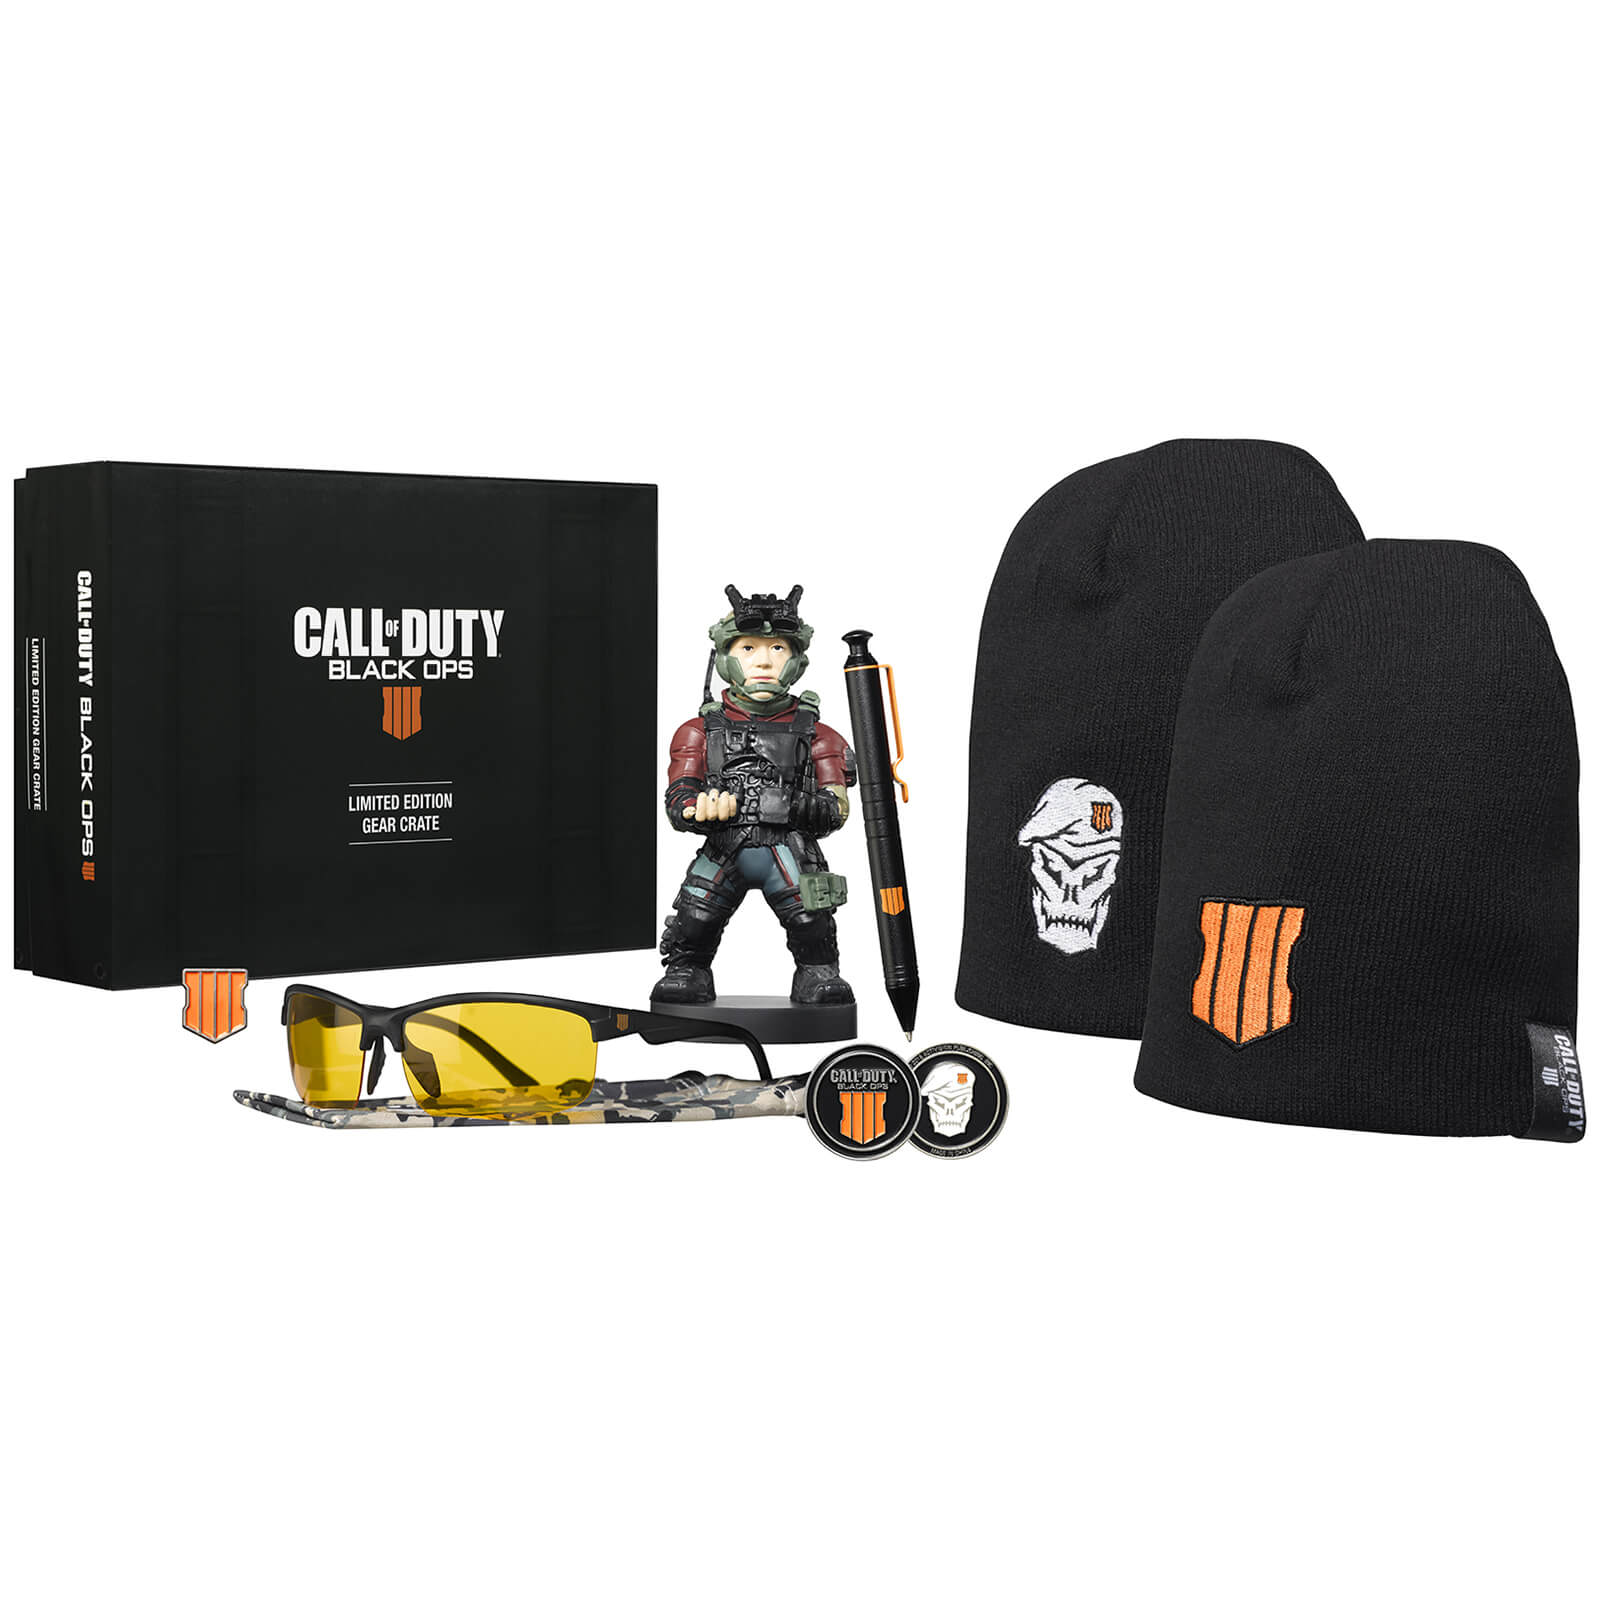 Call of Duty Black Ops 4 Limited Edition Gear Crate - Ajándéktárgyak Ajándéktárgyak